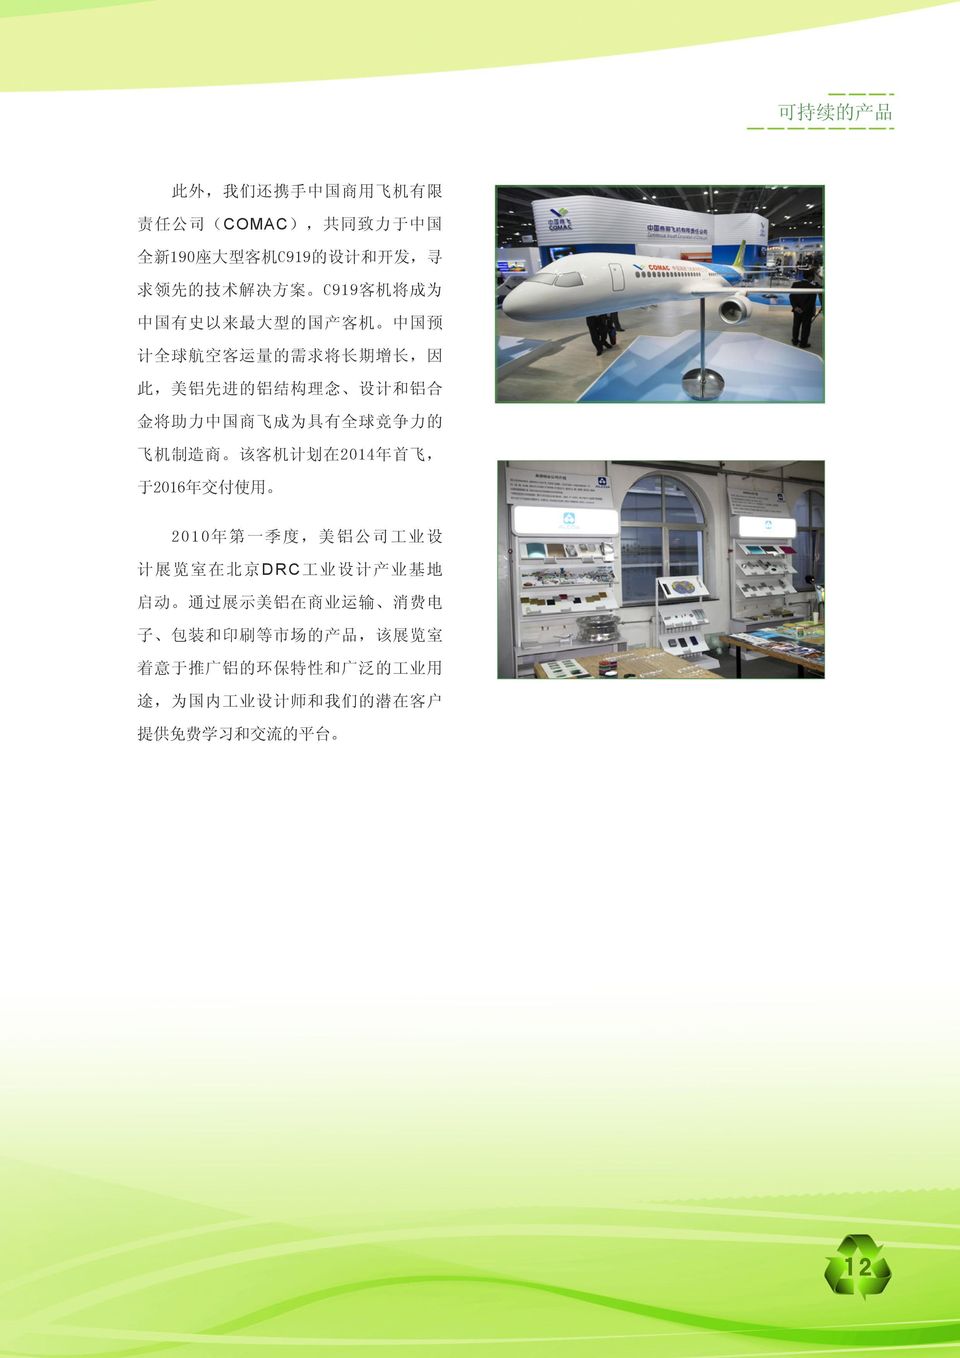 力 的 飞 机 制 造 商 该 客 机 计 划 在 2014 年 首 飞, 于 2016 年 交 付 使 用 2010 年 第 一 季 度, 美 铝 公 司 工 业 设 计 展 览 室 在 北 京 DRC 工 业 设 计 产 业 基 地 启 动 通 过 展 示 美 铝 在 商 业